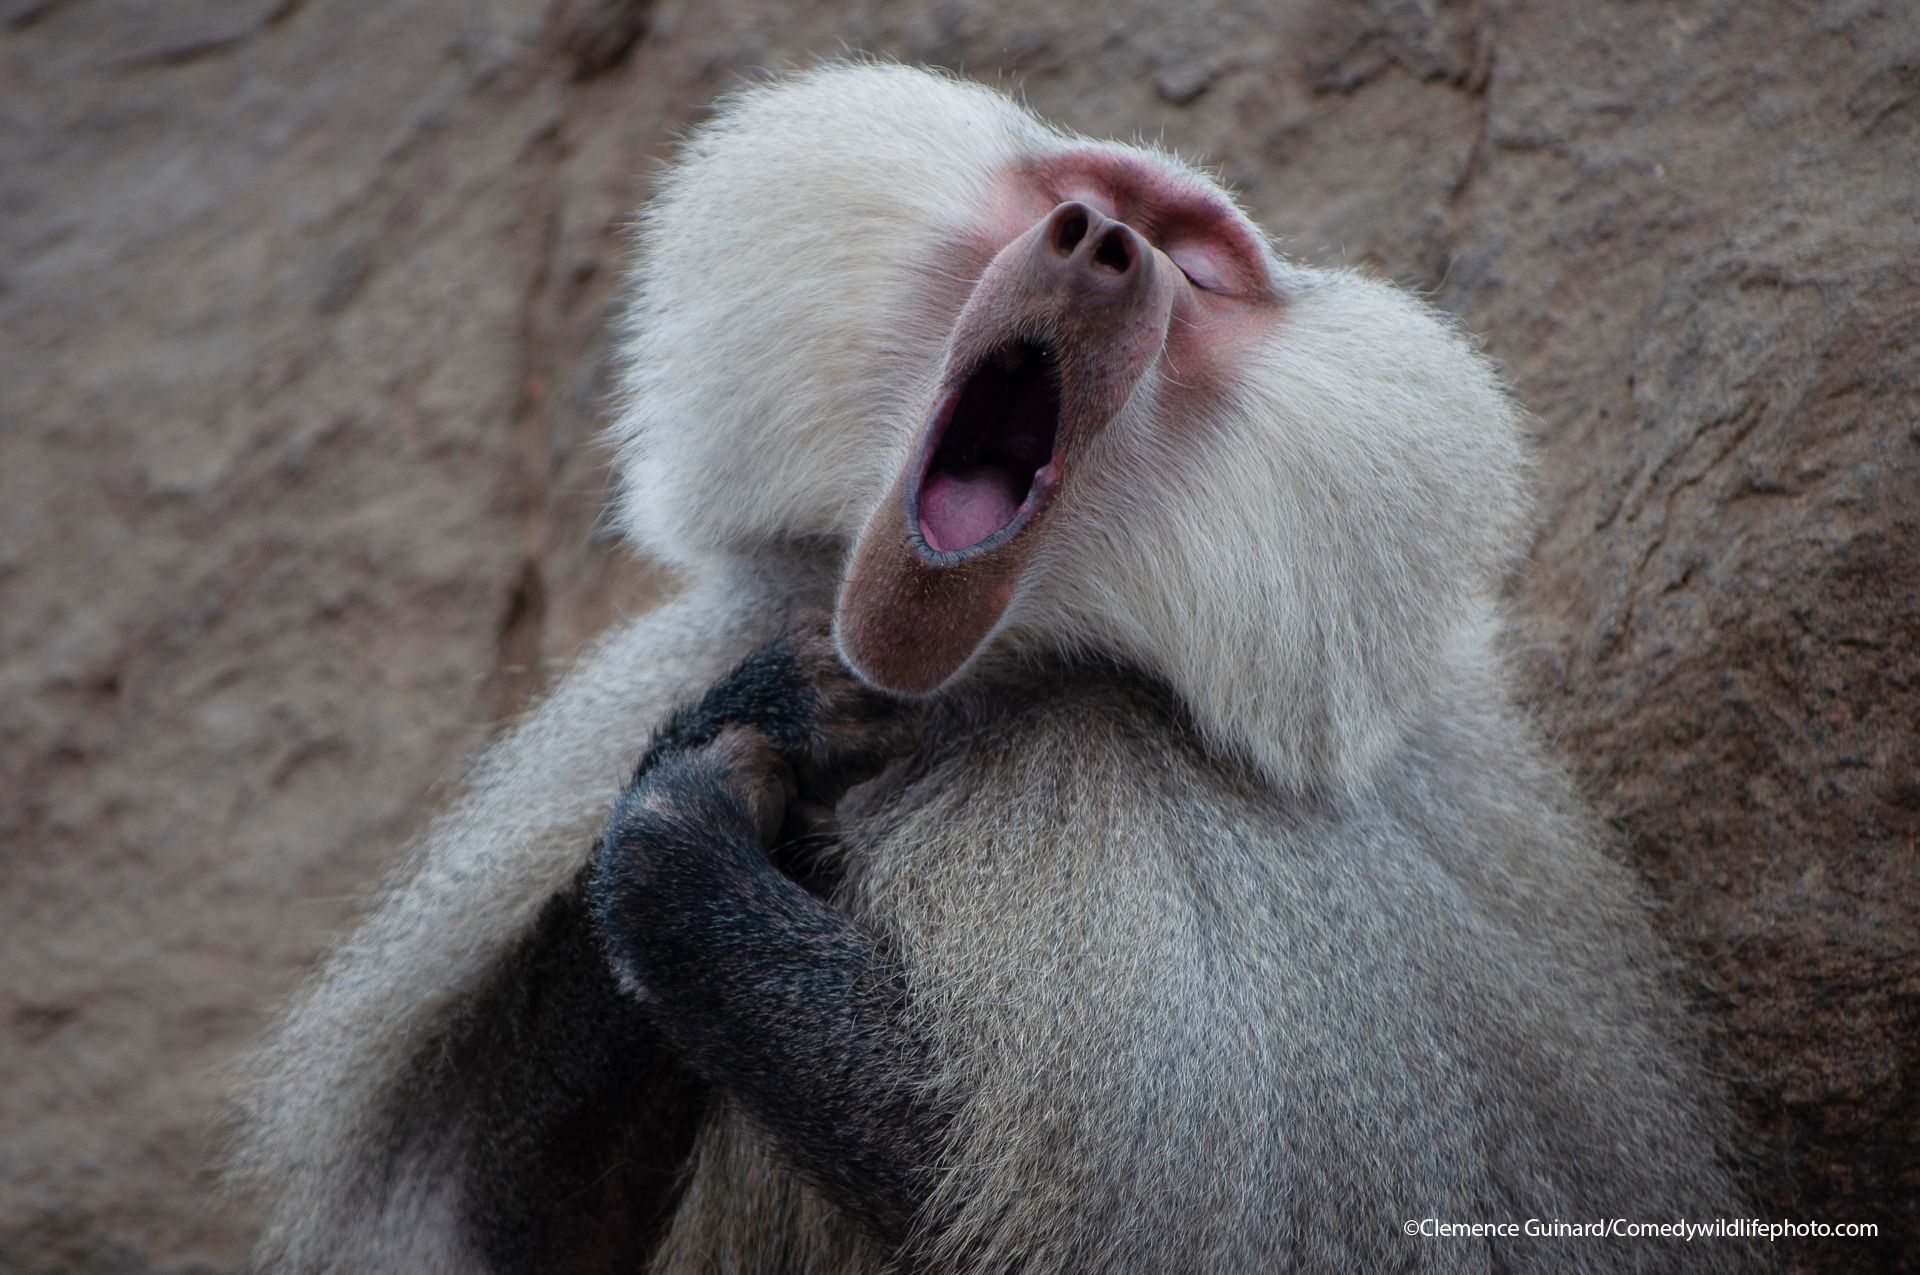 En bavian med hvit pels på kinnene og hendene foldet gaper, mens øynene er lukket.